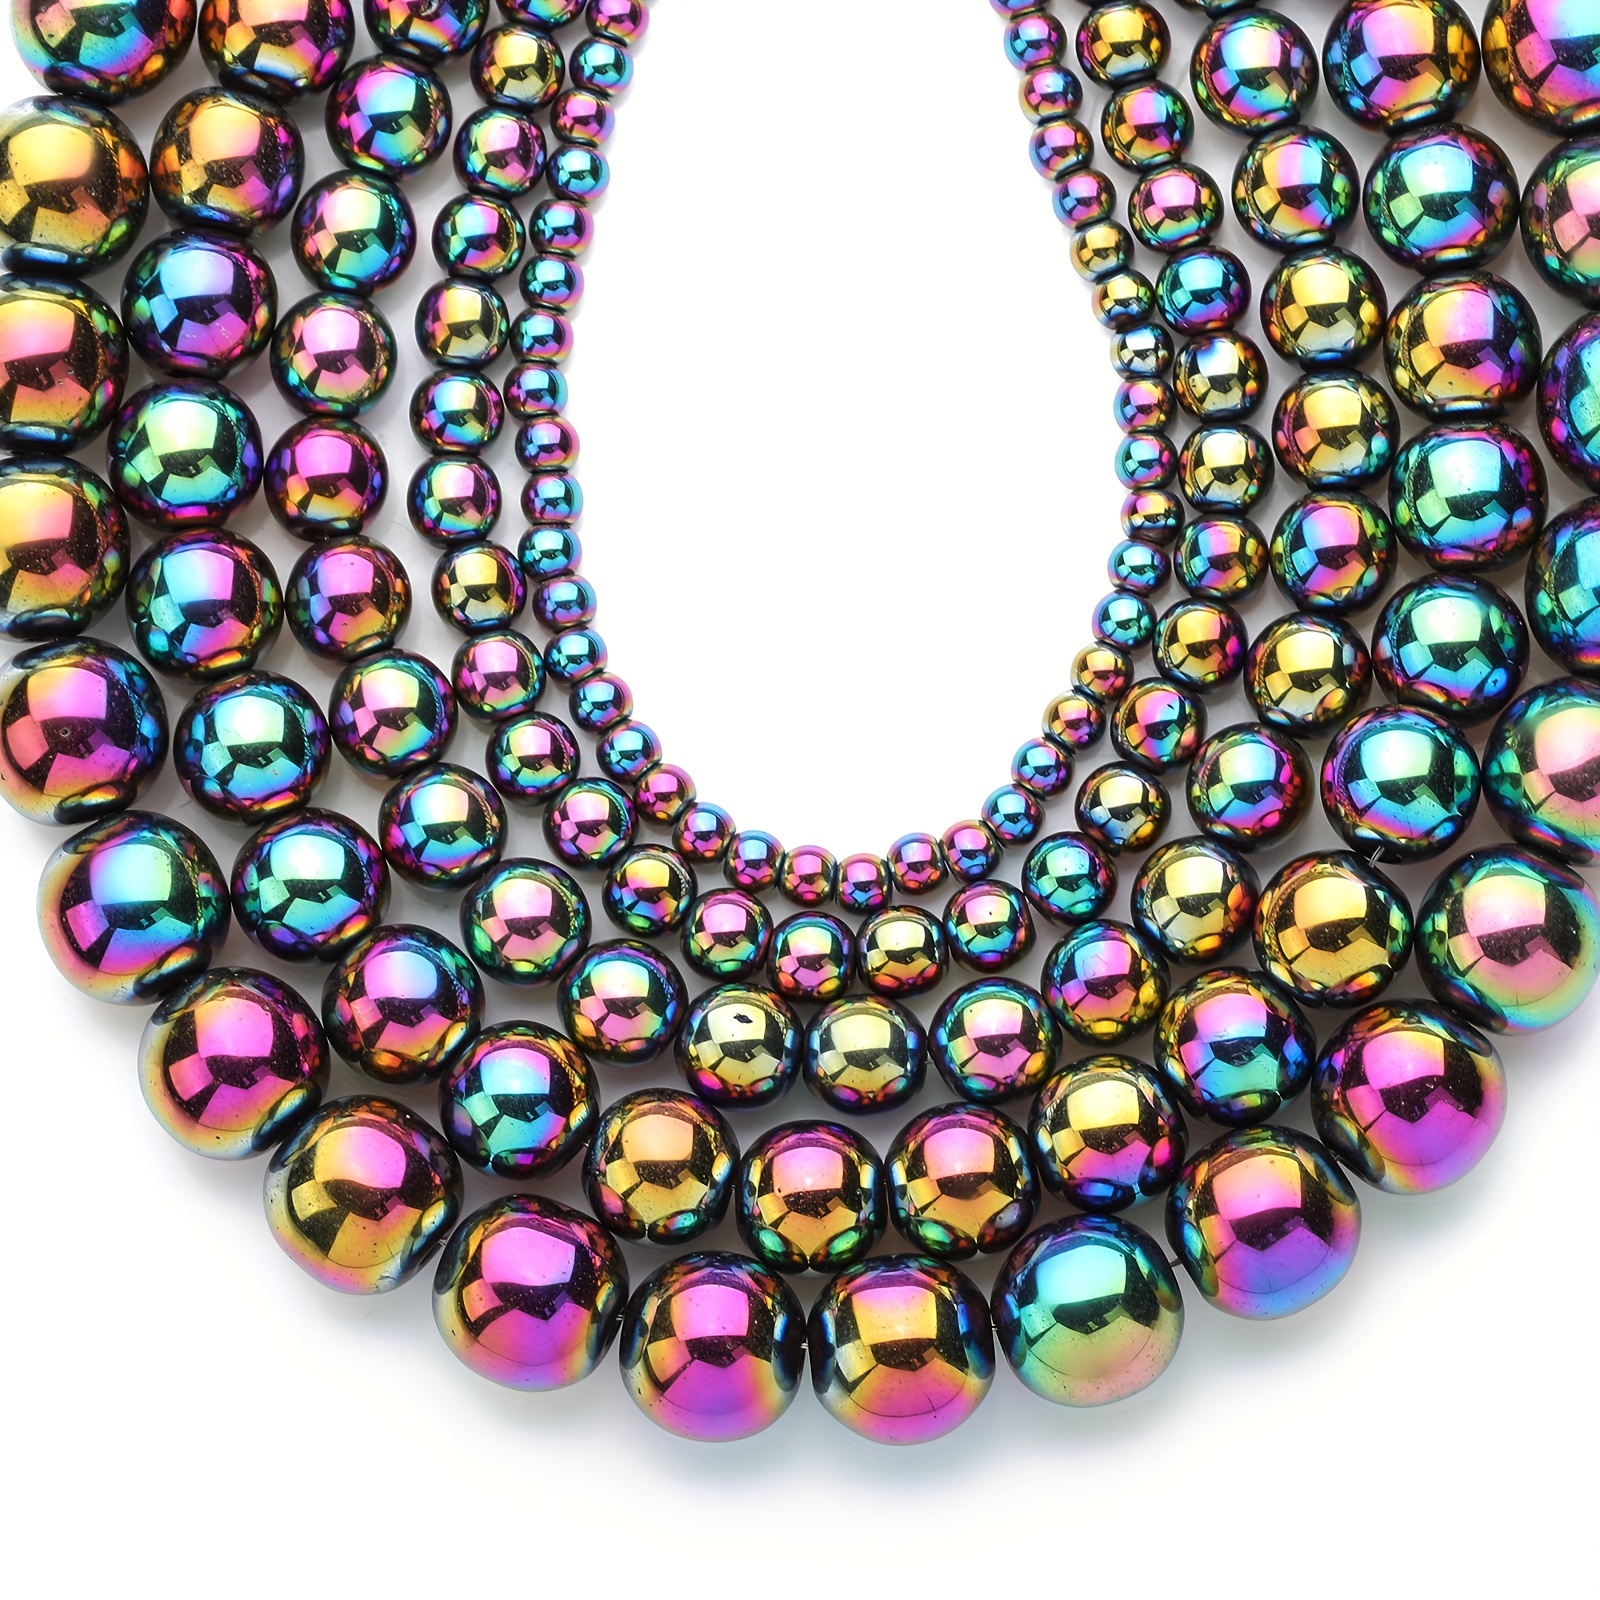 

Rainbow Hematite Gemstone Beads For Jewelry Making Hematite Gemstones Loose Stone Beads